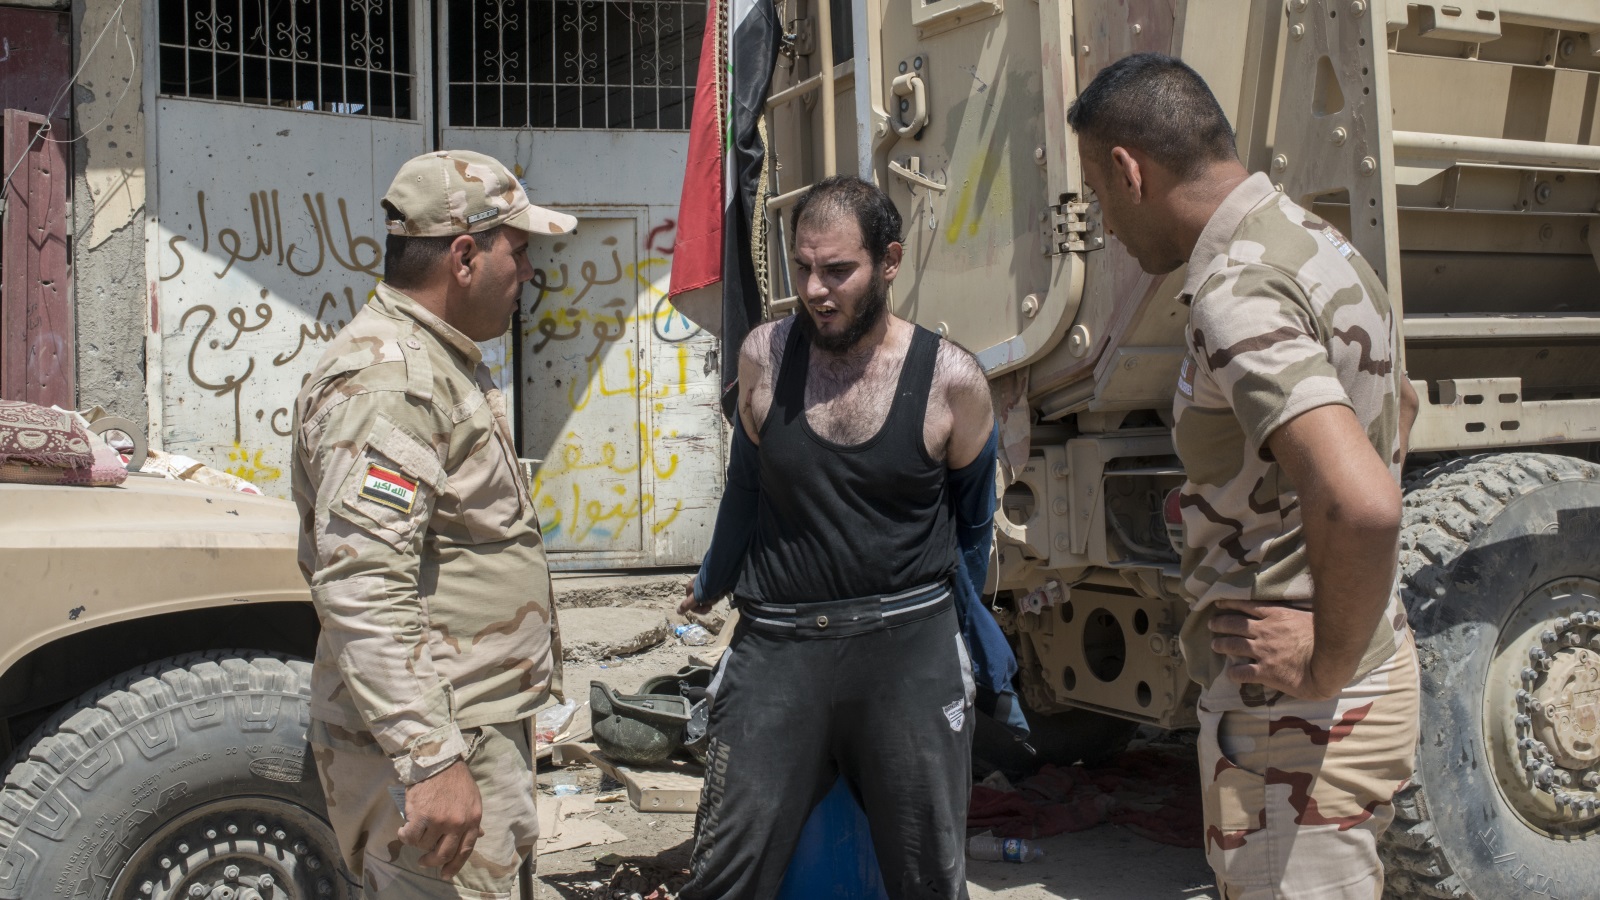 ‪جنديان عراقيان يوثقان شخصا يشتبه في أنه أحد مقاتلي تنظيم الدولة بالموصل القديمة‬ (غيتي)  